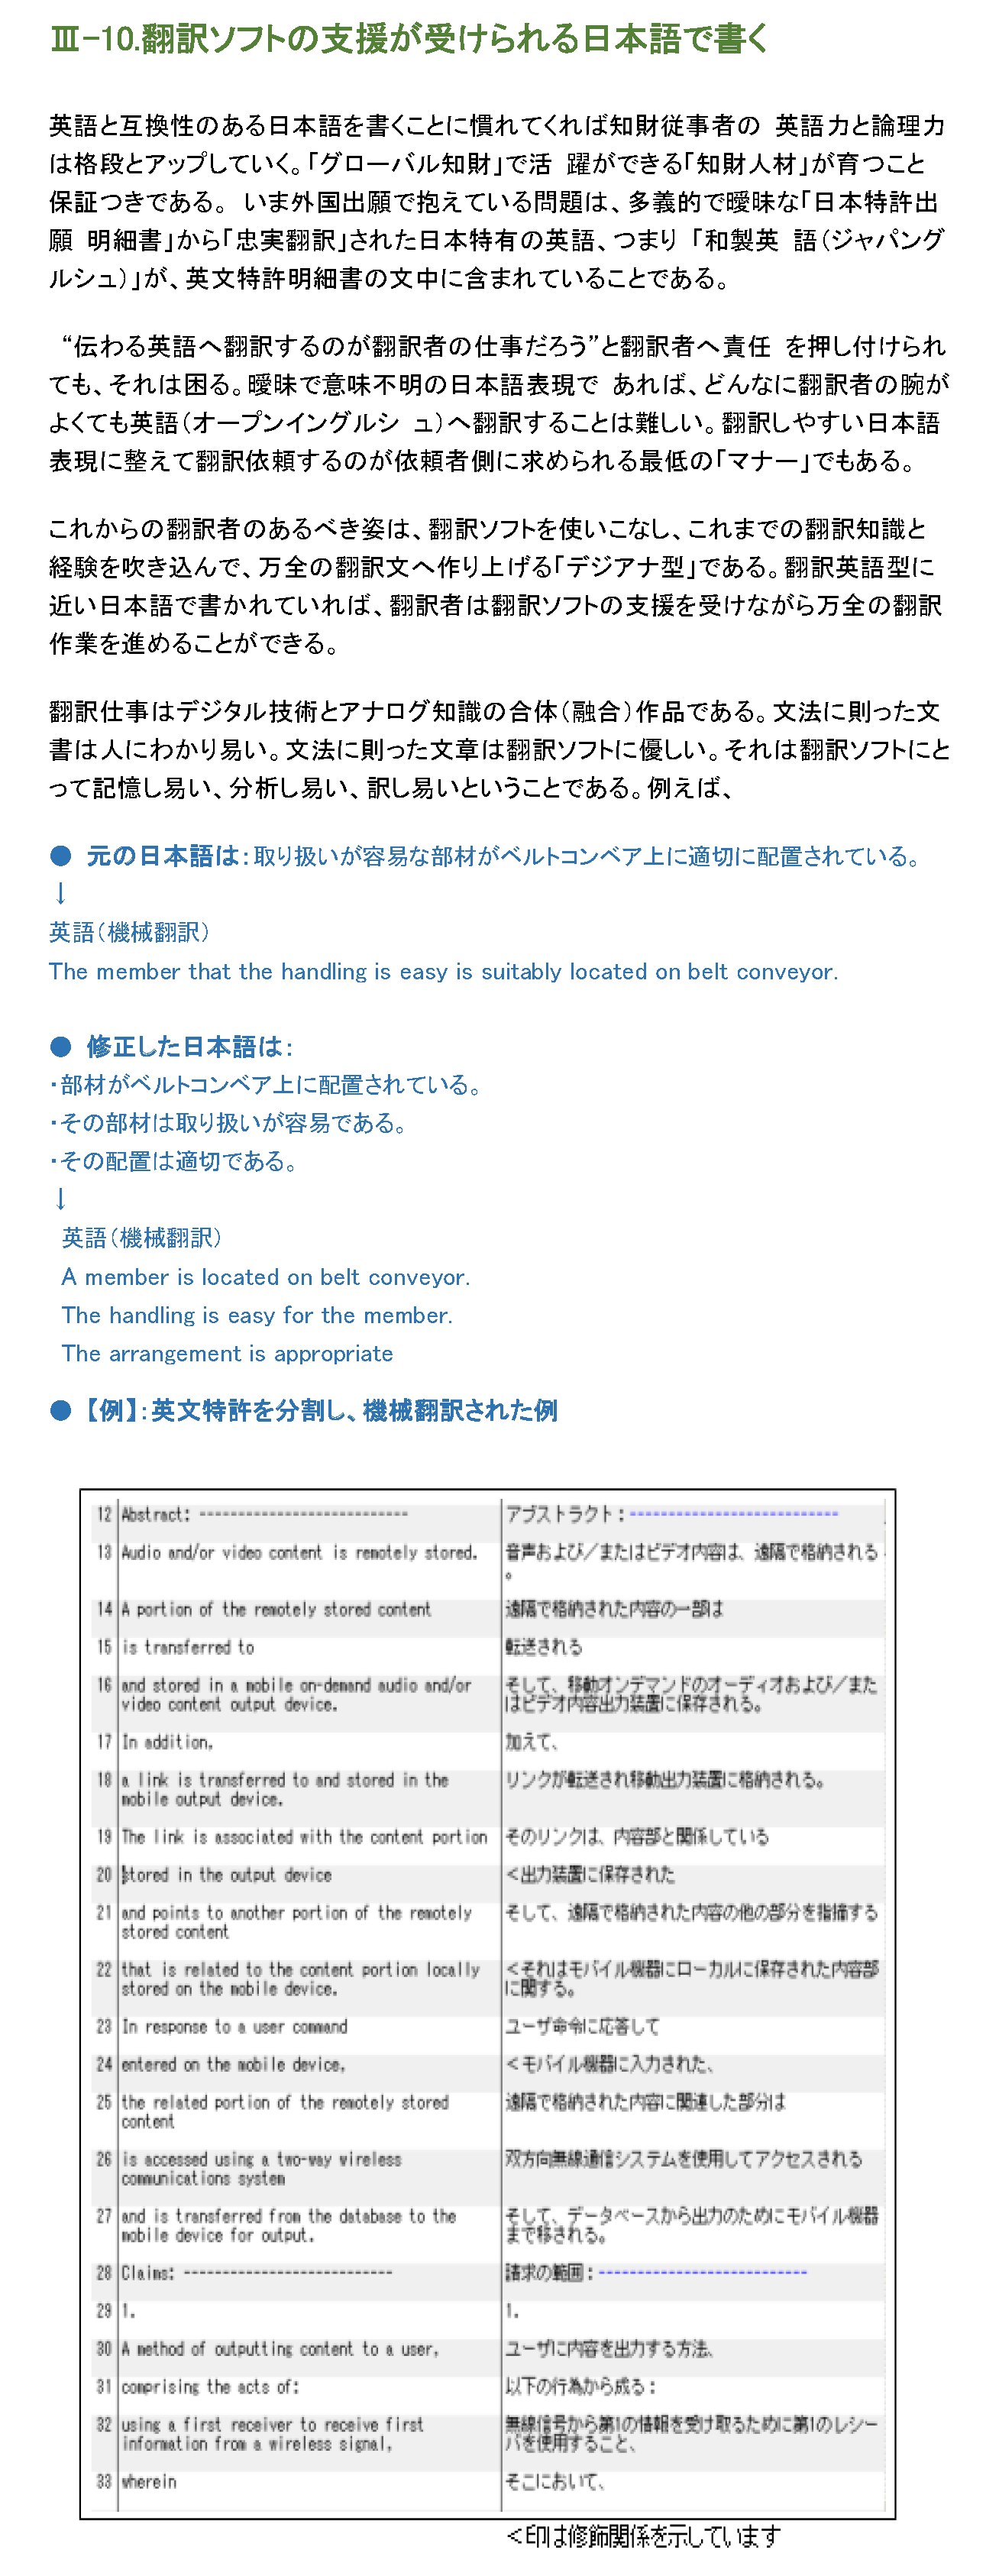 翻訳ソフトの支援が受けられる日本語で書く